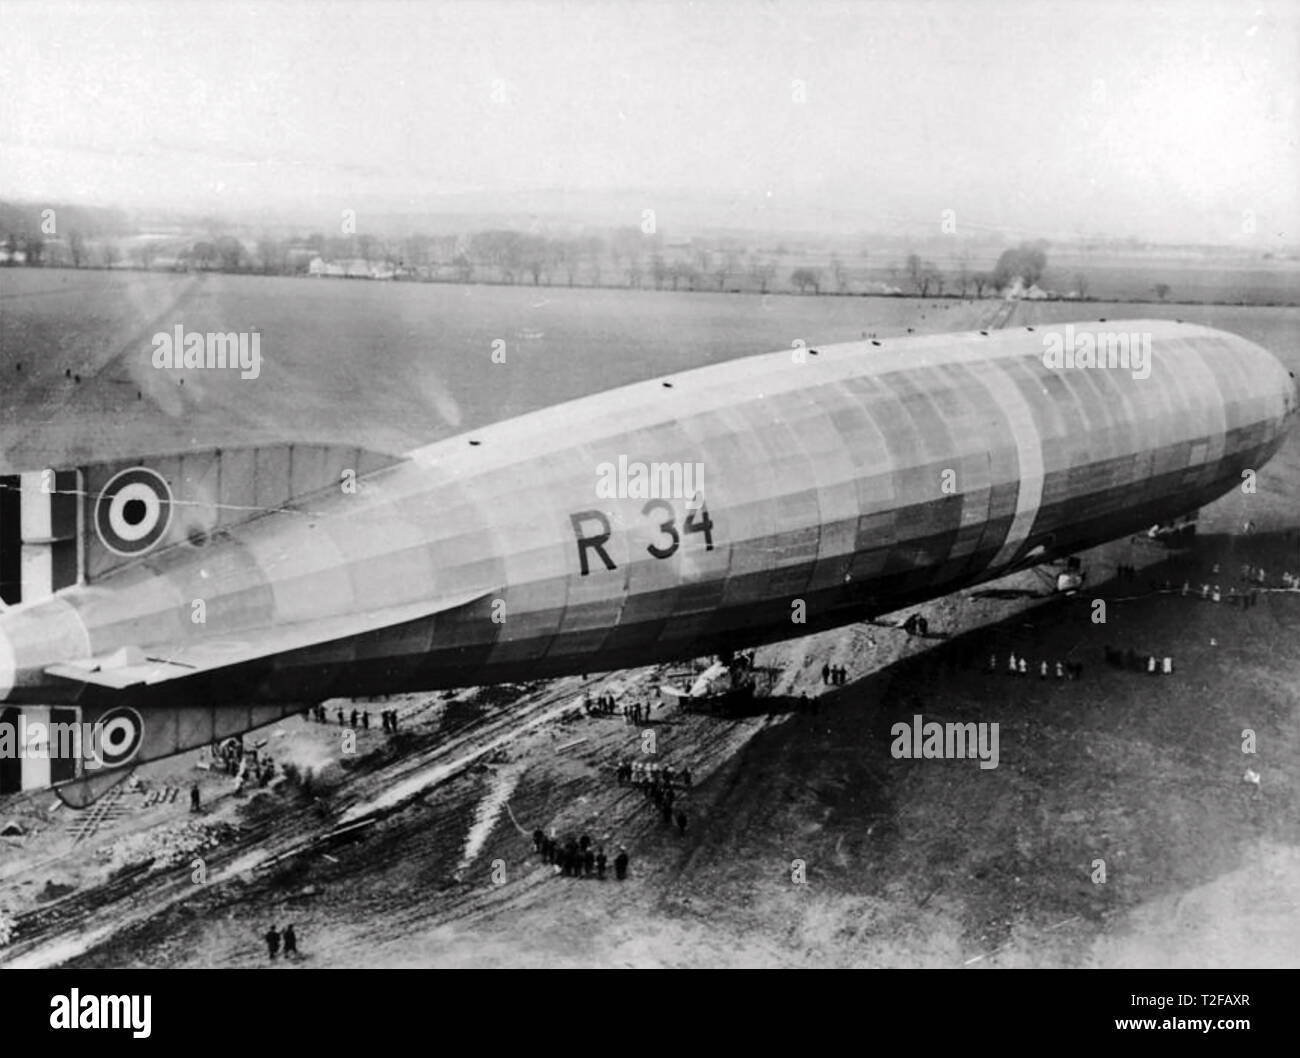 R34 AIRSHIP la préparation pour le premier vol transatlantique est-ouest en juillet 1919 Banque D'Images